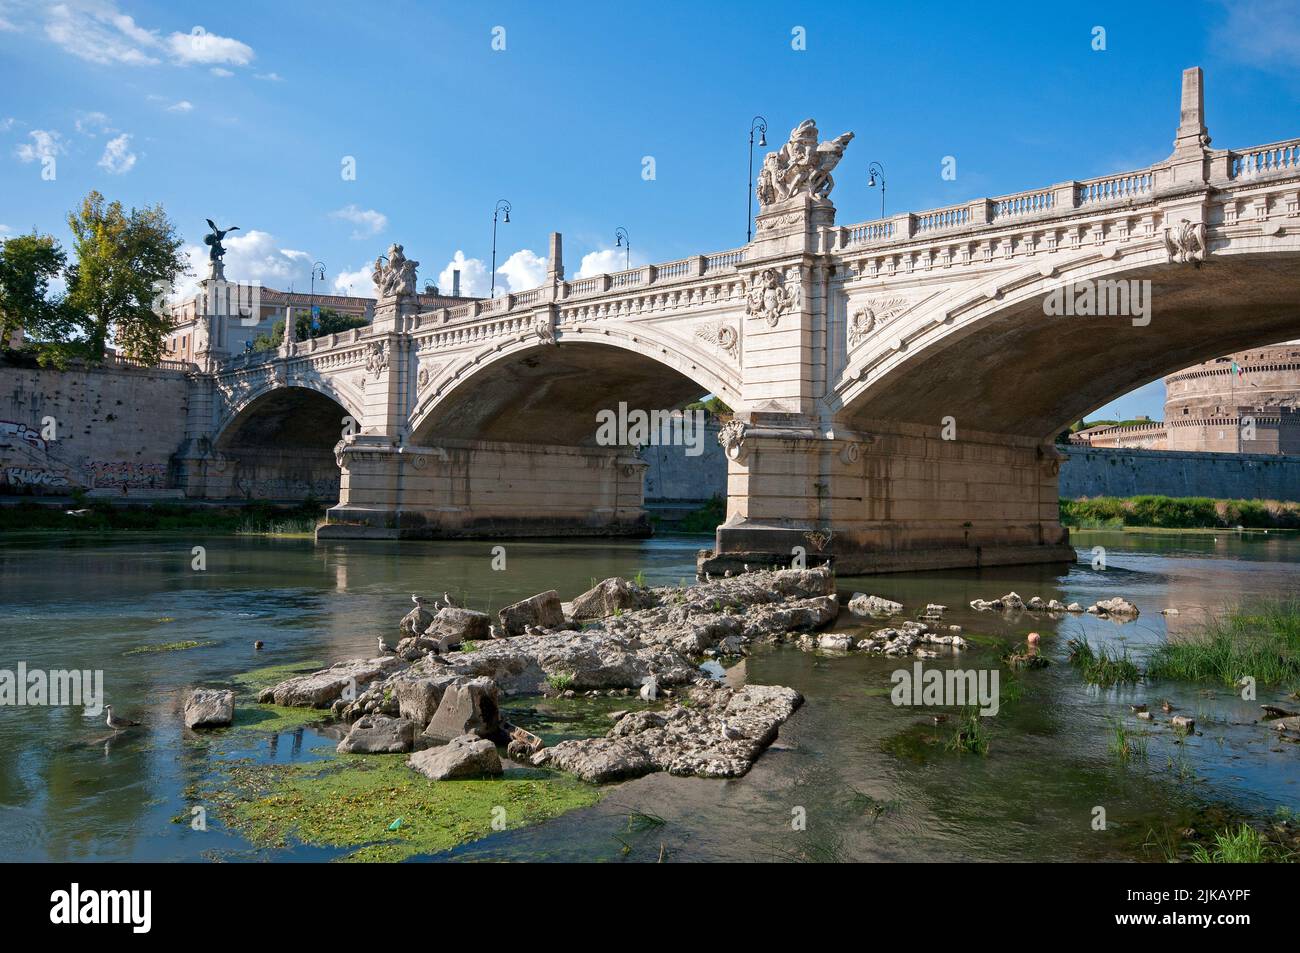 El puente Vittorio Emanuele II y los restos del antiguo puente Nerónico que emergen durante la sequía del río Tíber, Roma, Italia Foto de stock